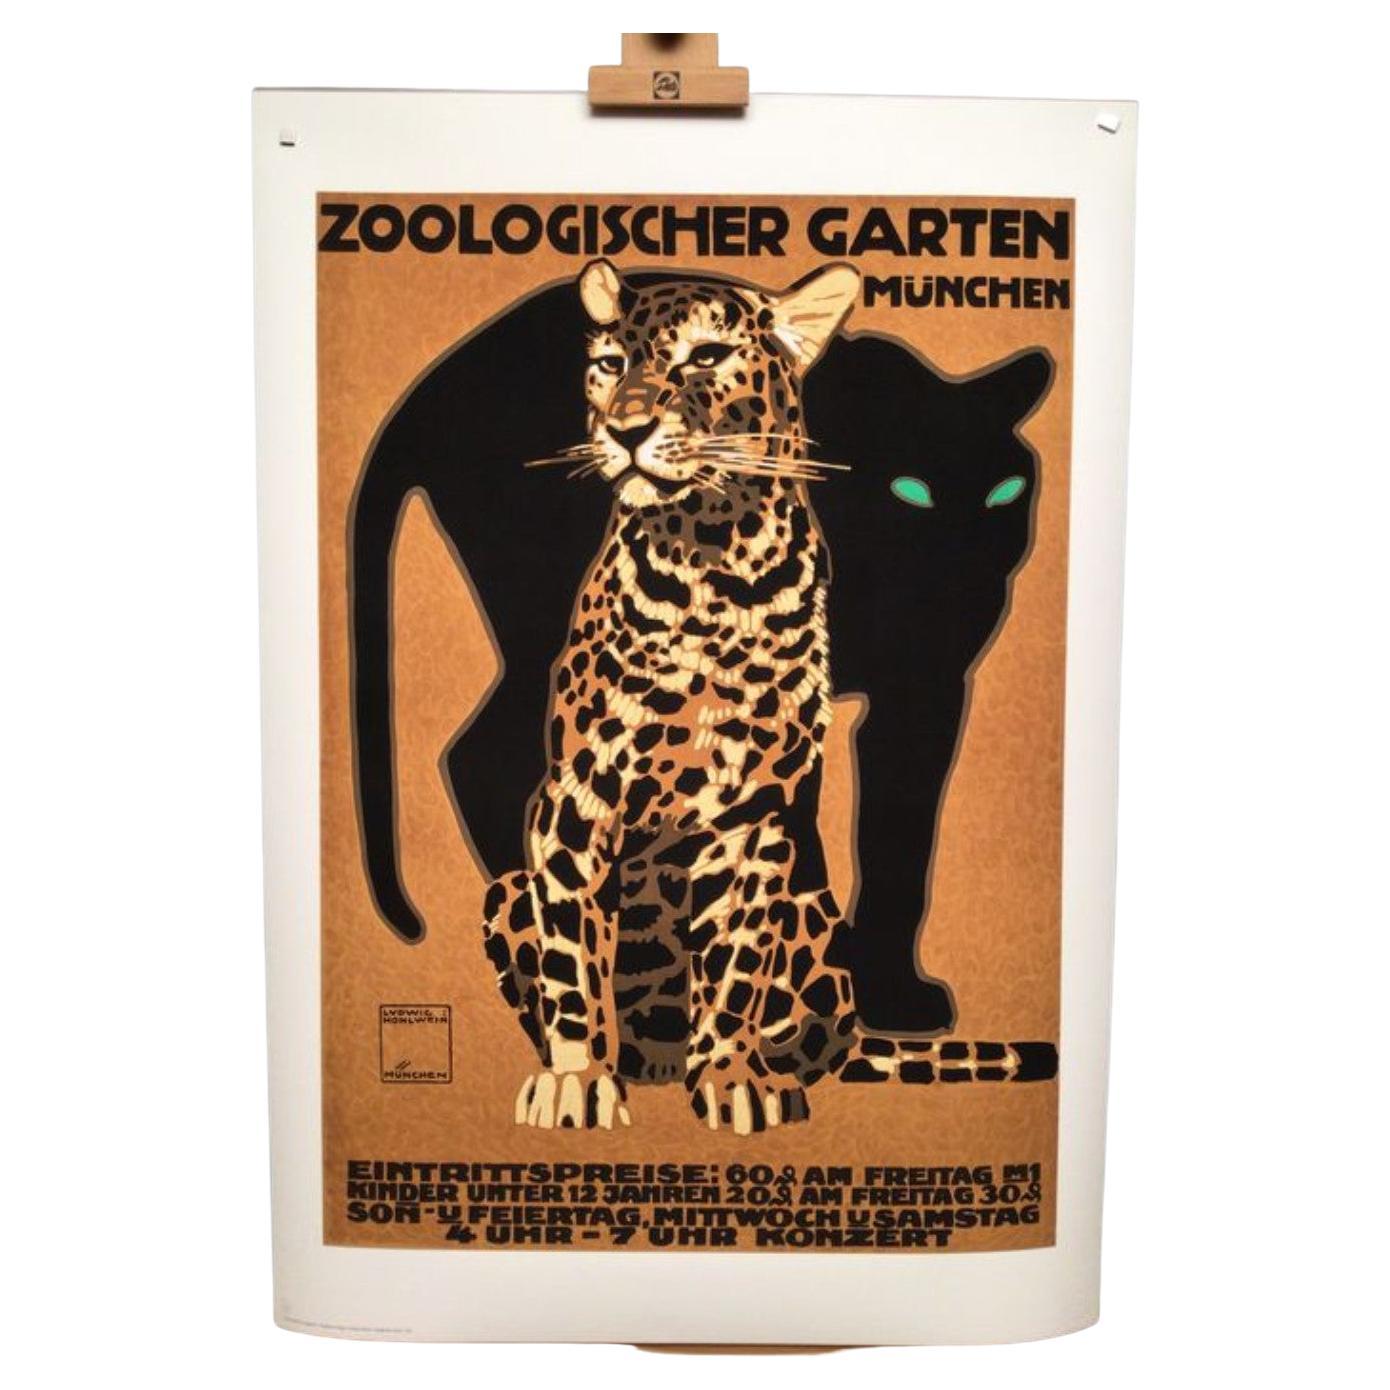 Ludwig Hohlwein Zoologischer Garten Munchen Poster d'epoca ri-edizione